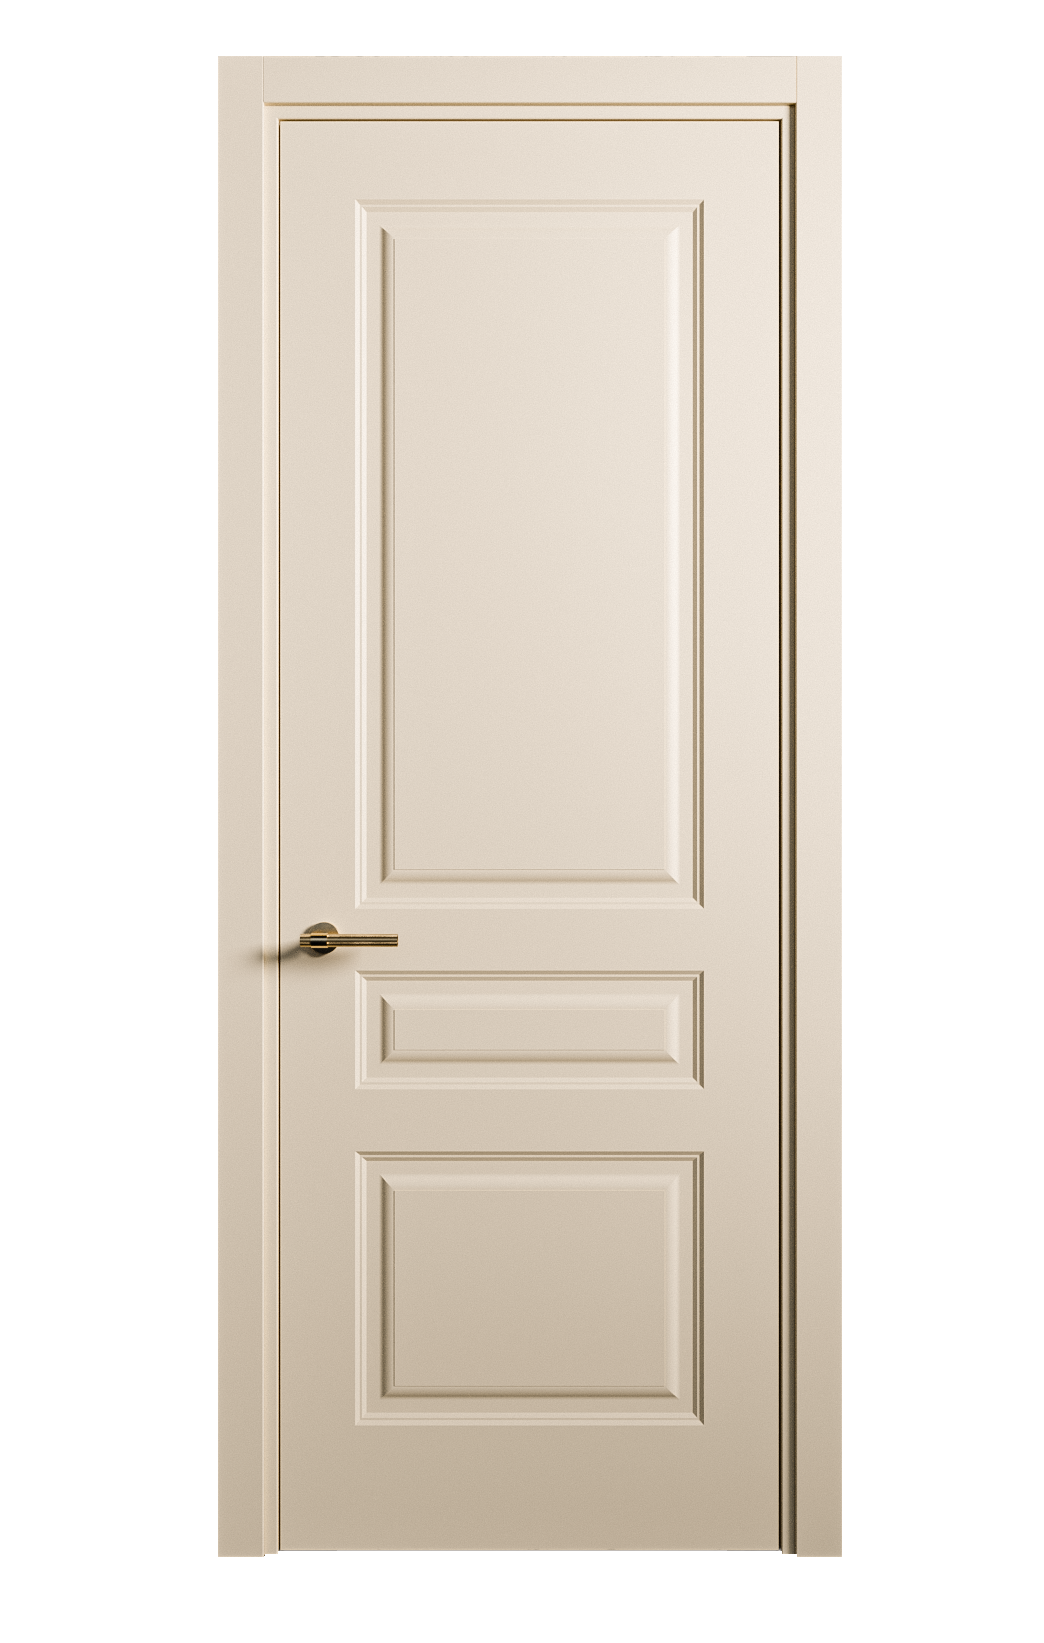 Межкомнатная дверь Вита-2 глухая эмаль ral 1015 26317